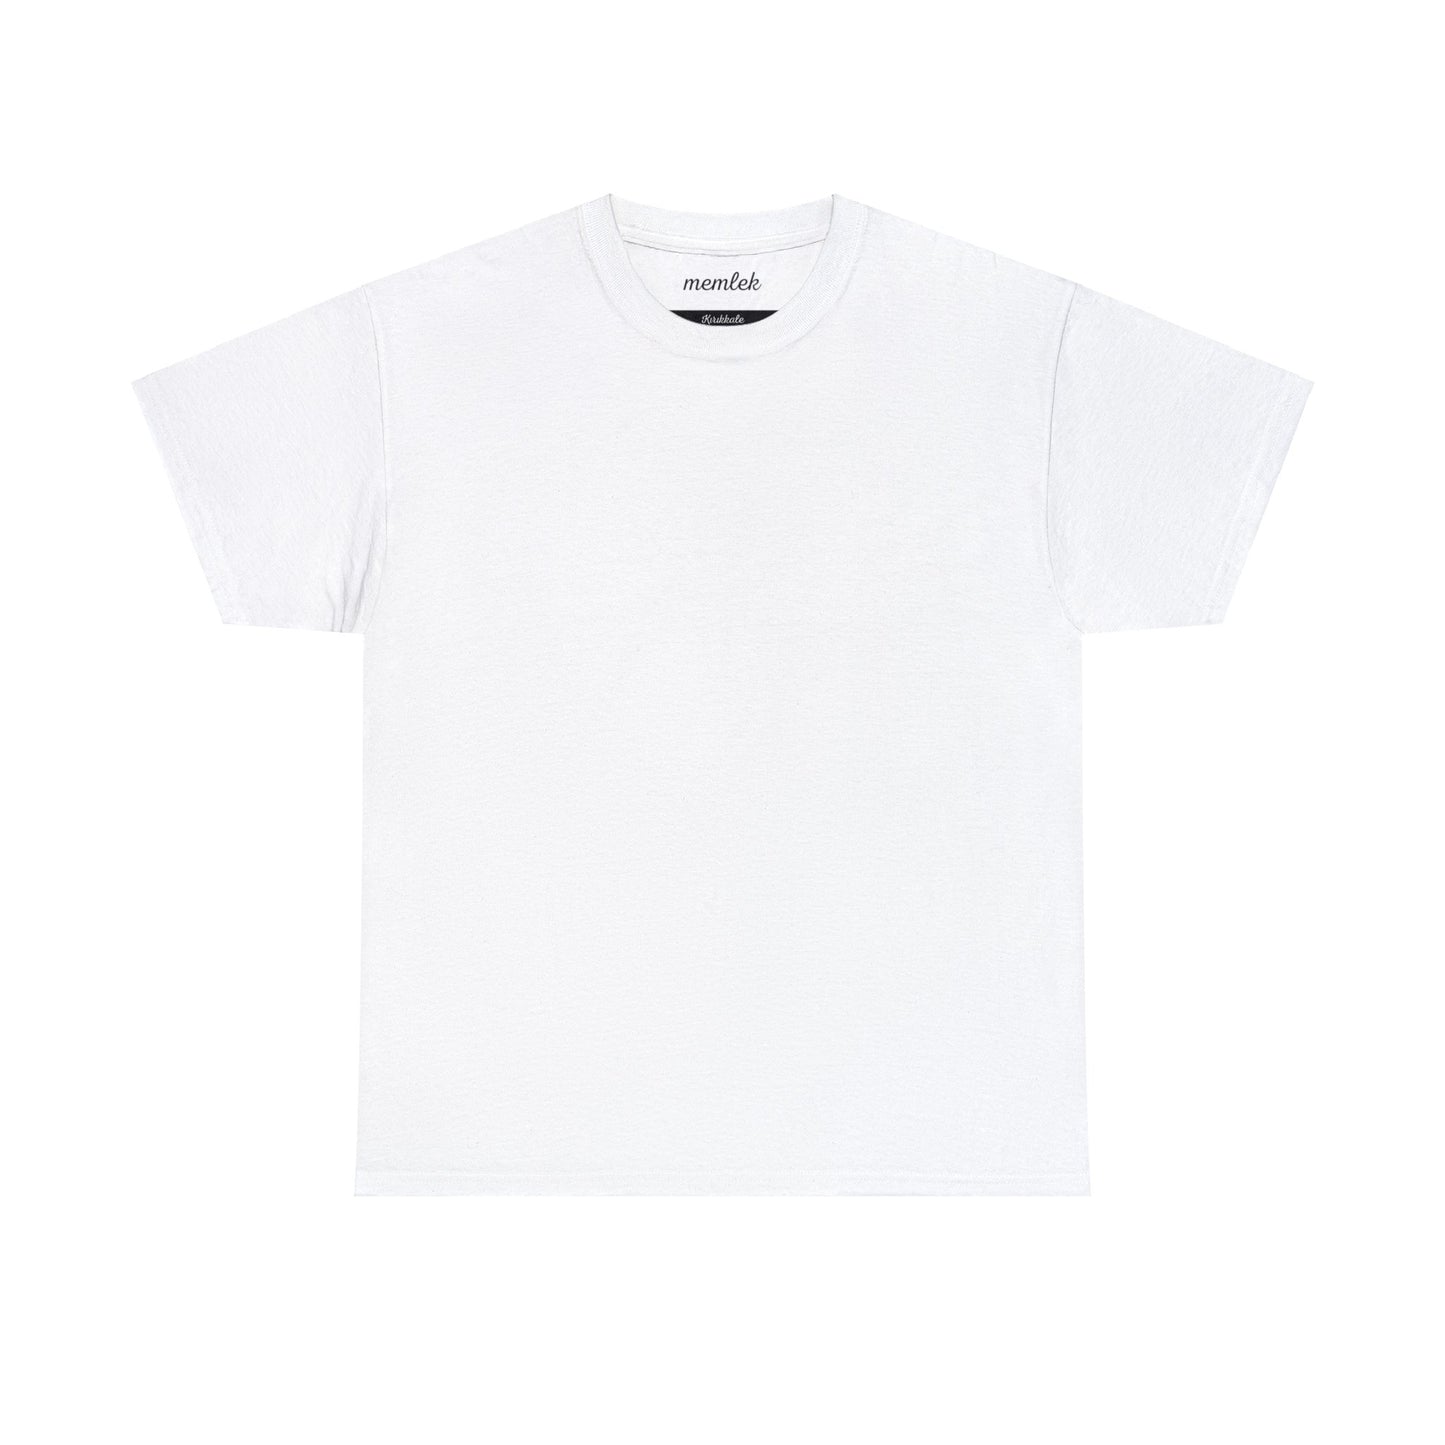 Kurt - 71 Kırıkkale - T-Shirt - Back Print - Black/White